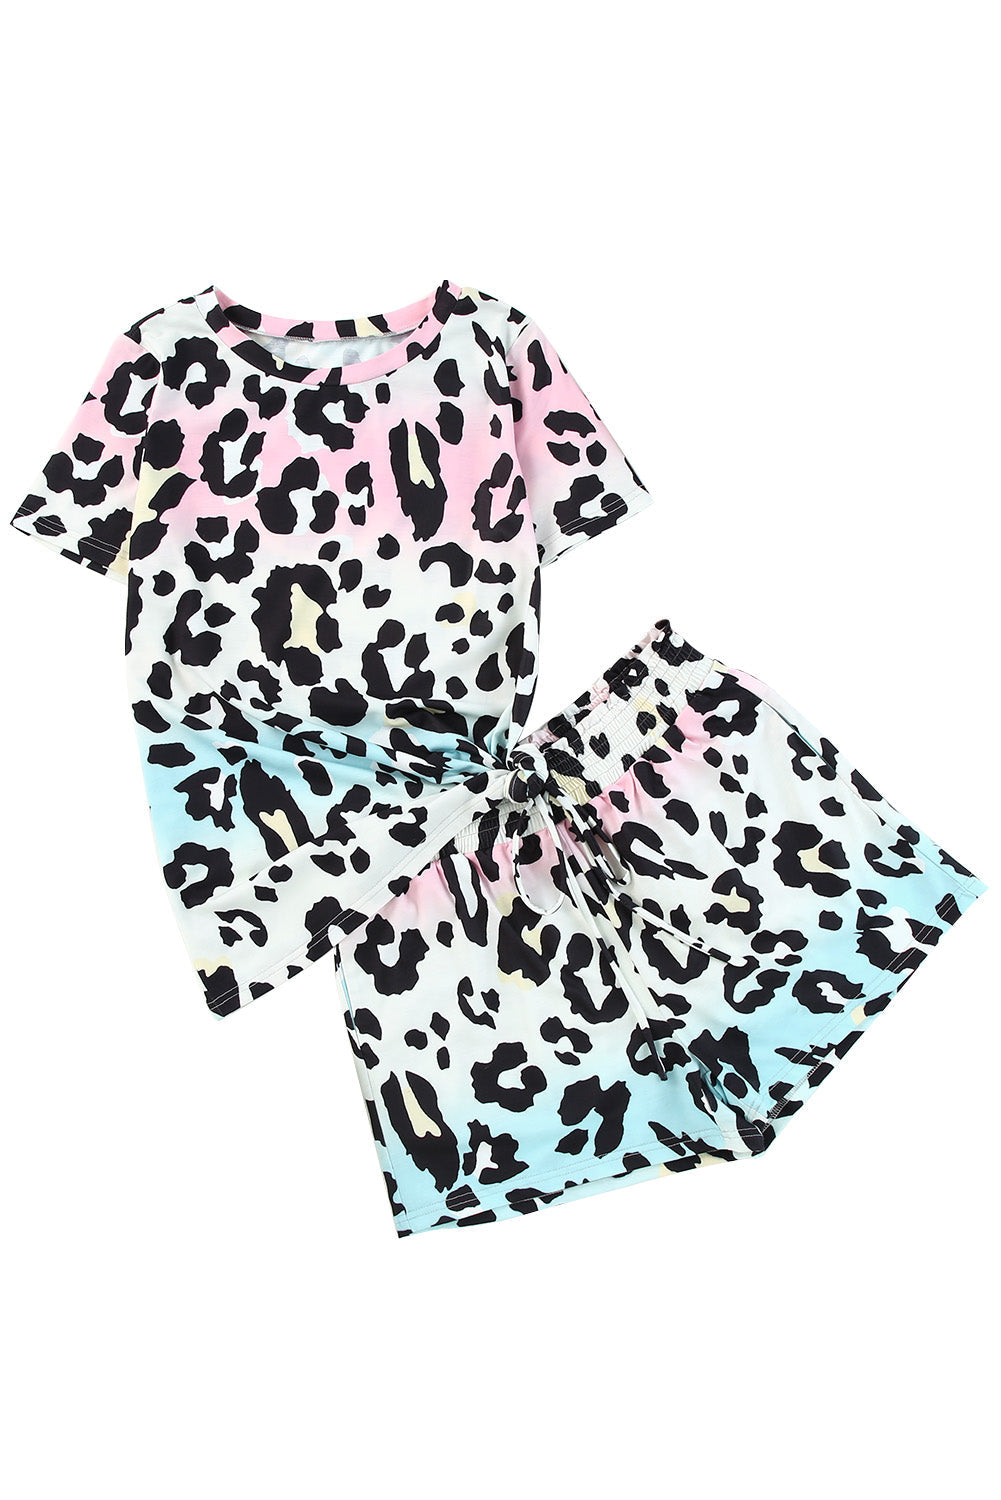 Leopard Tie Dye Print Short Sleeve Lace-up Waist Plus Size Lounge Set